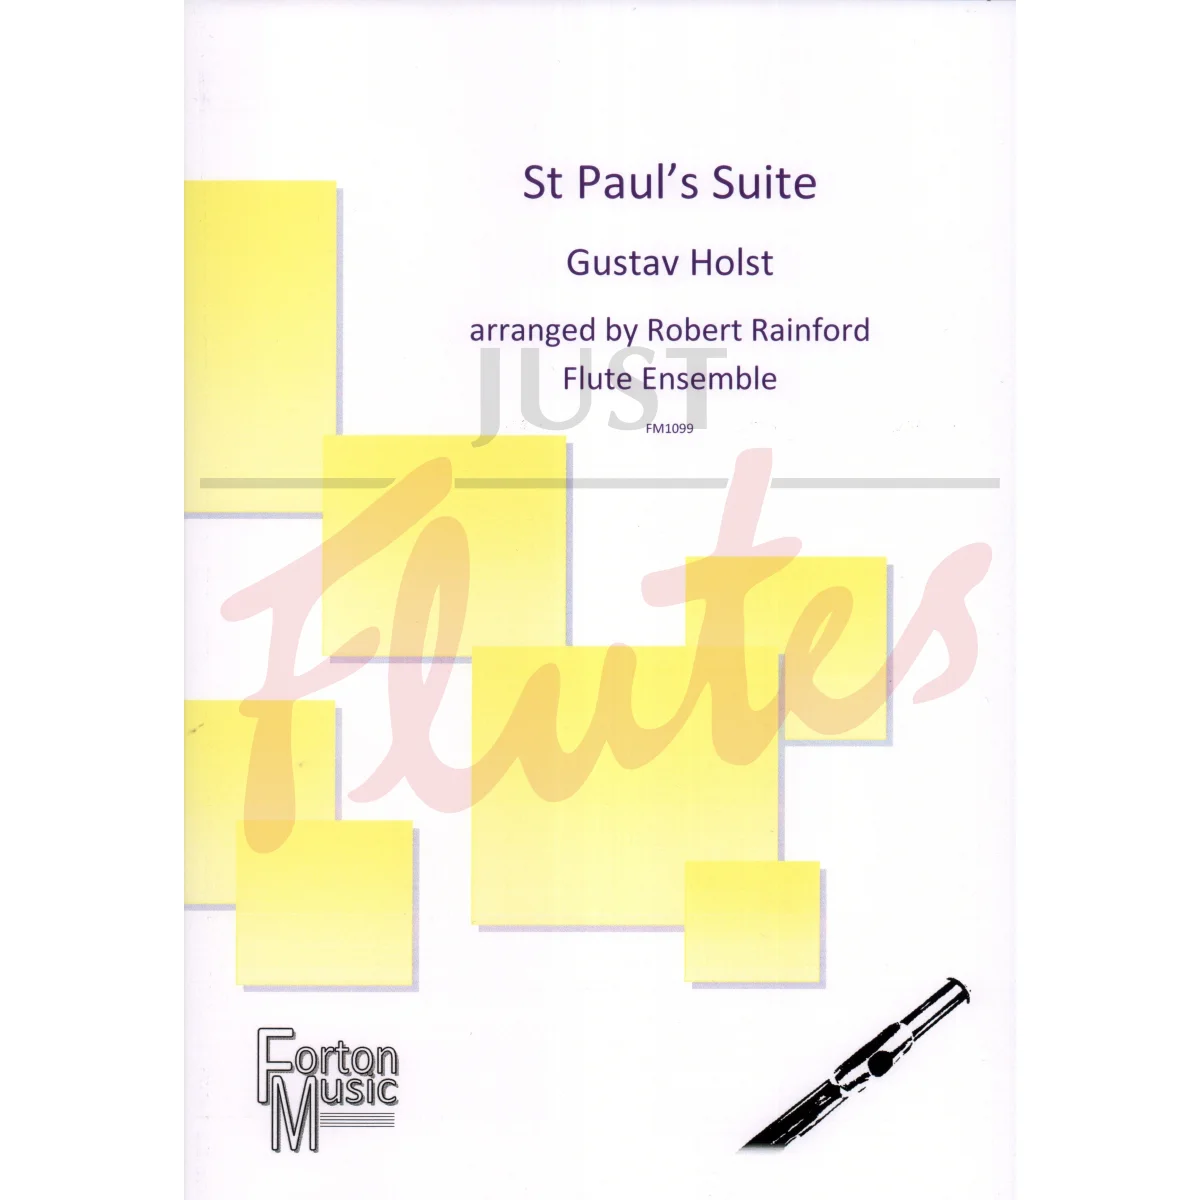 St. Pauls Suite for Flute Ensemble